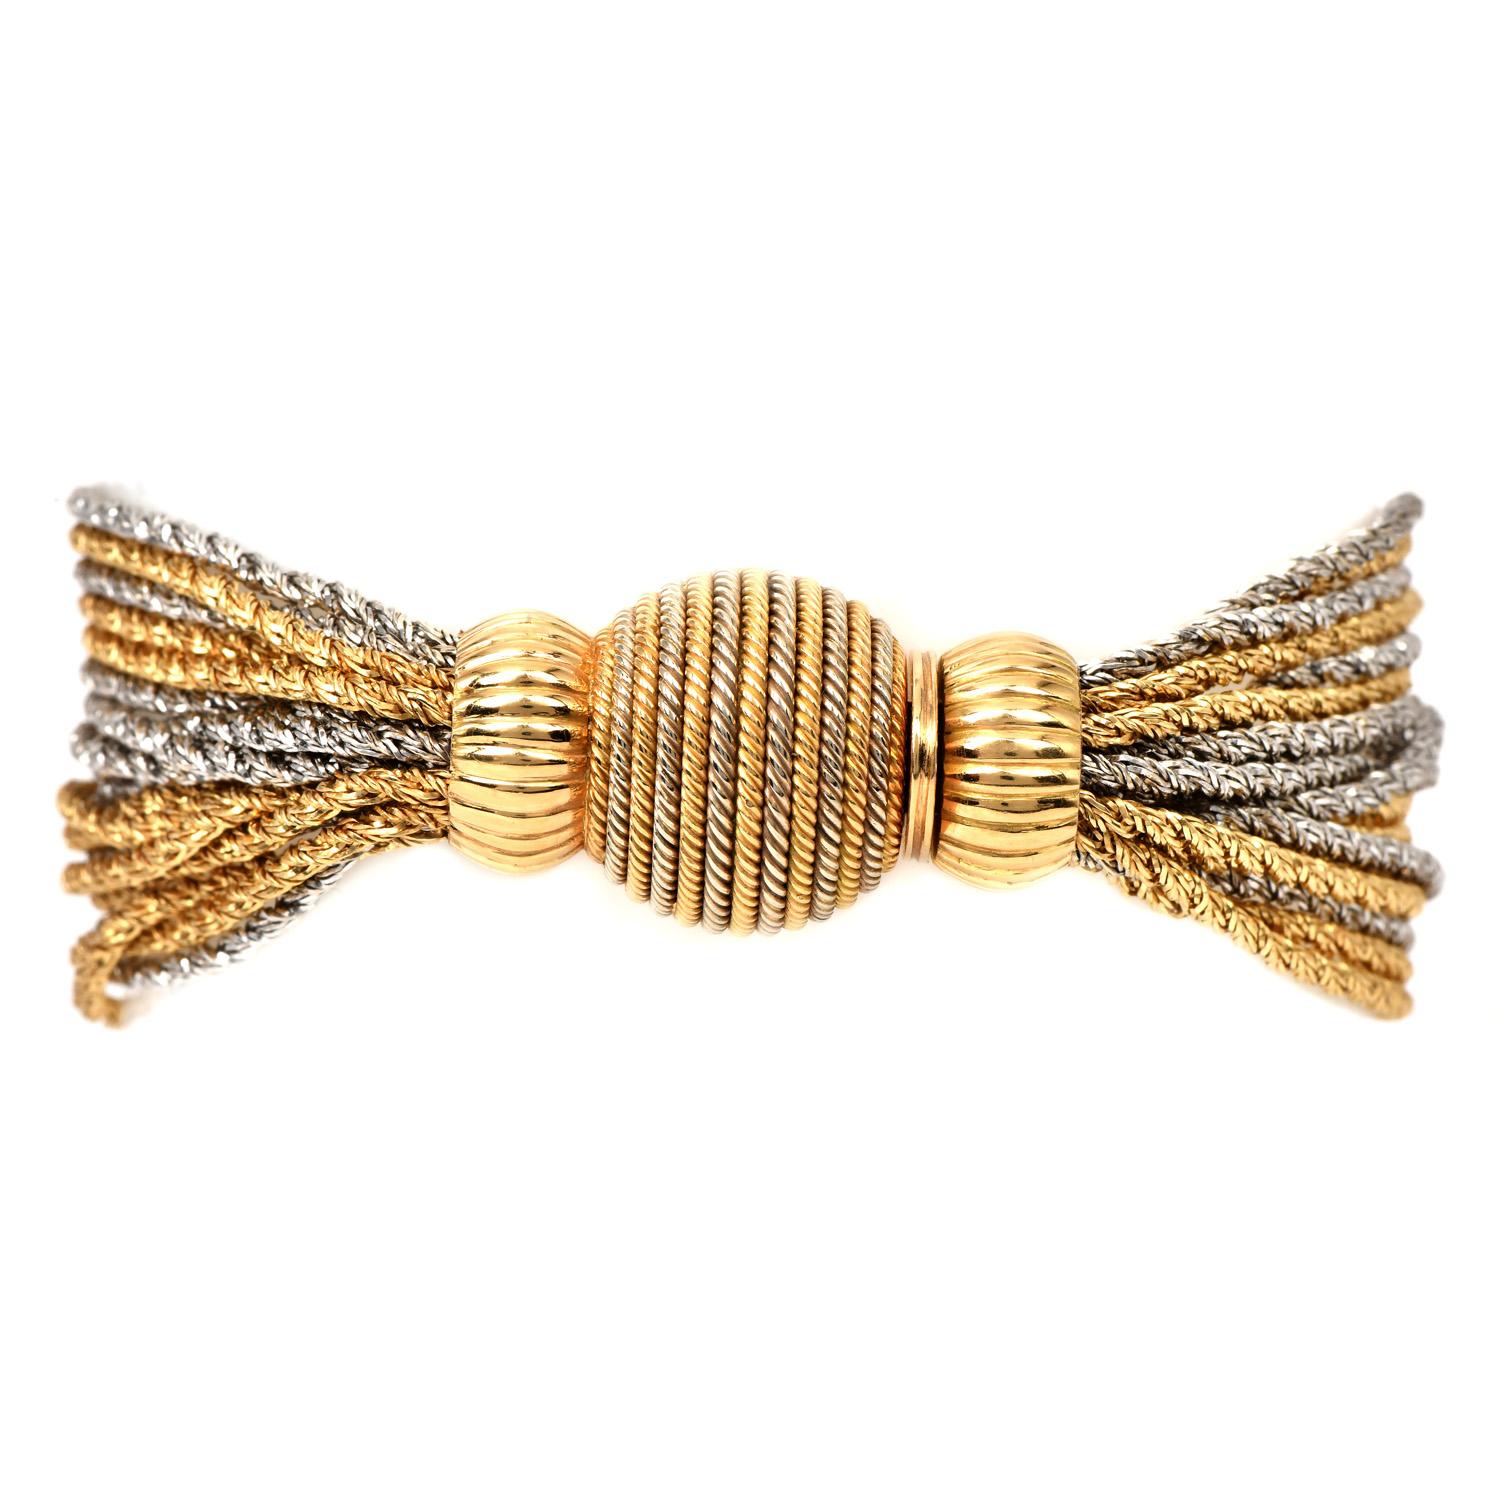 Bracelet vintage de la fin des années 1970, avec un motif de brins multiples, dans une finition dorée hautement polie. 

Réalisé en or jaune et blanc 18 carats, ce bracelet à maillons est finement confectionné et doté d'un fermoir à insert en forme